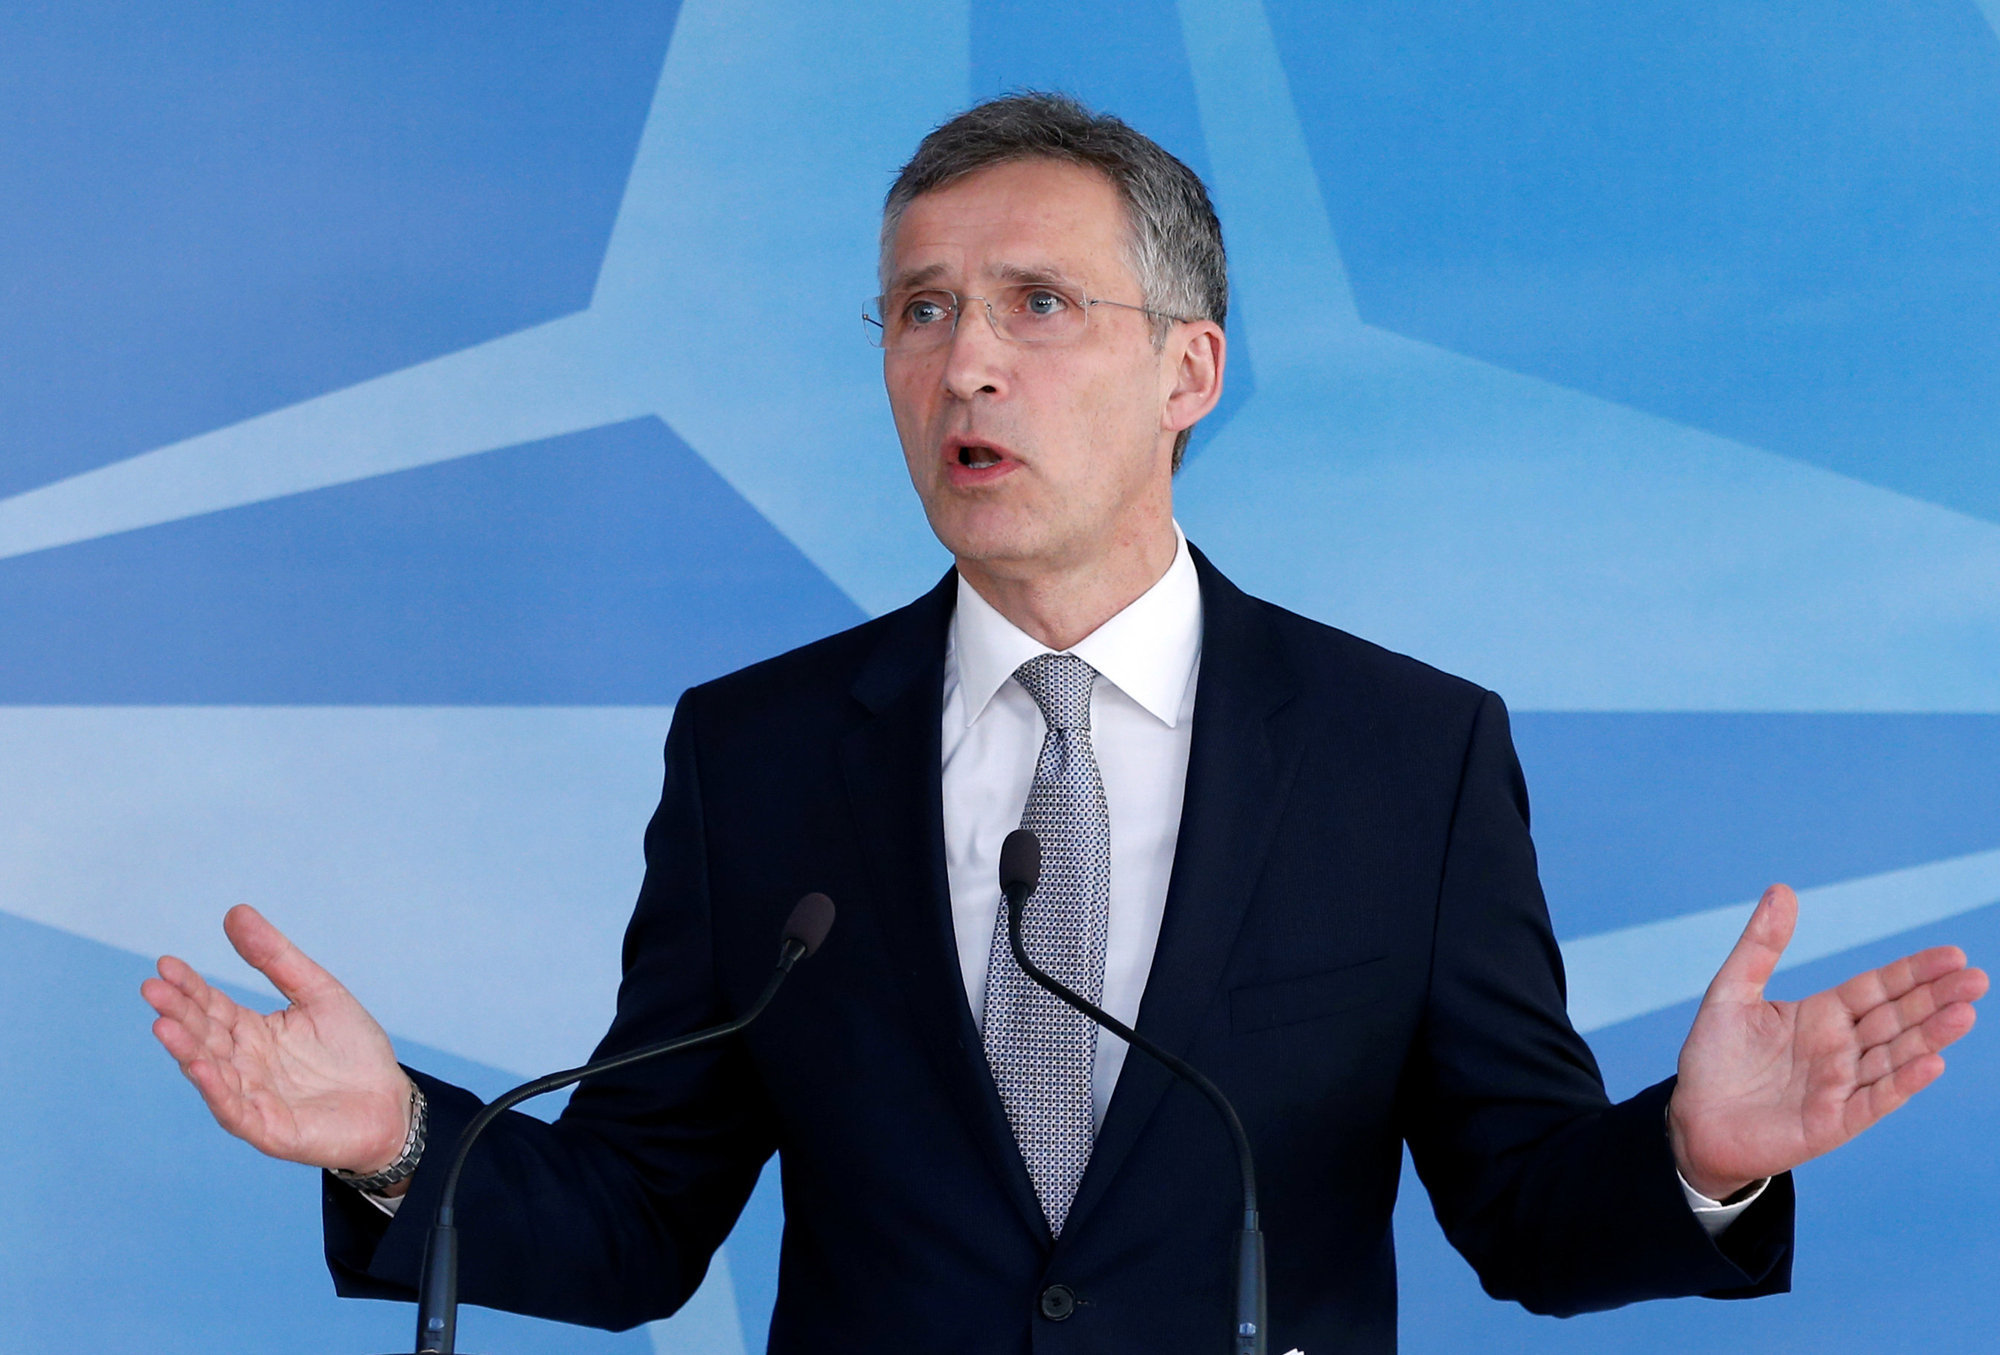 Посол США: НАТО обождет с экспансией, дабы не усугублять проблем России